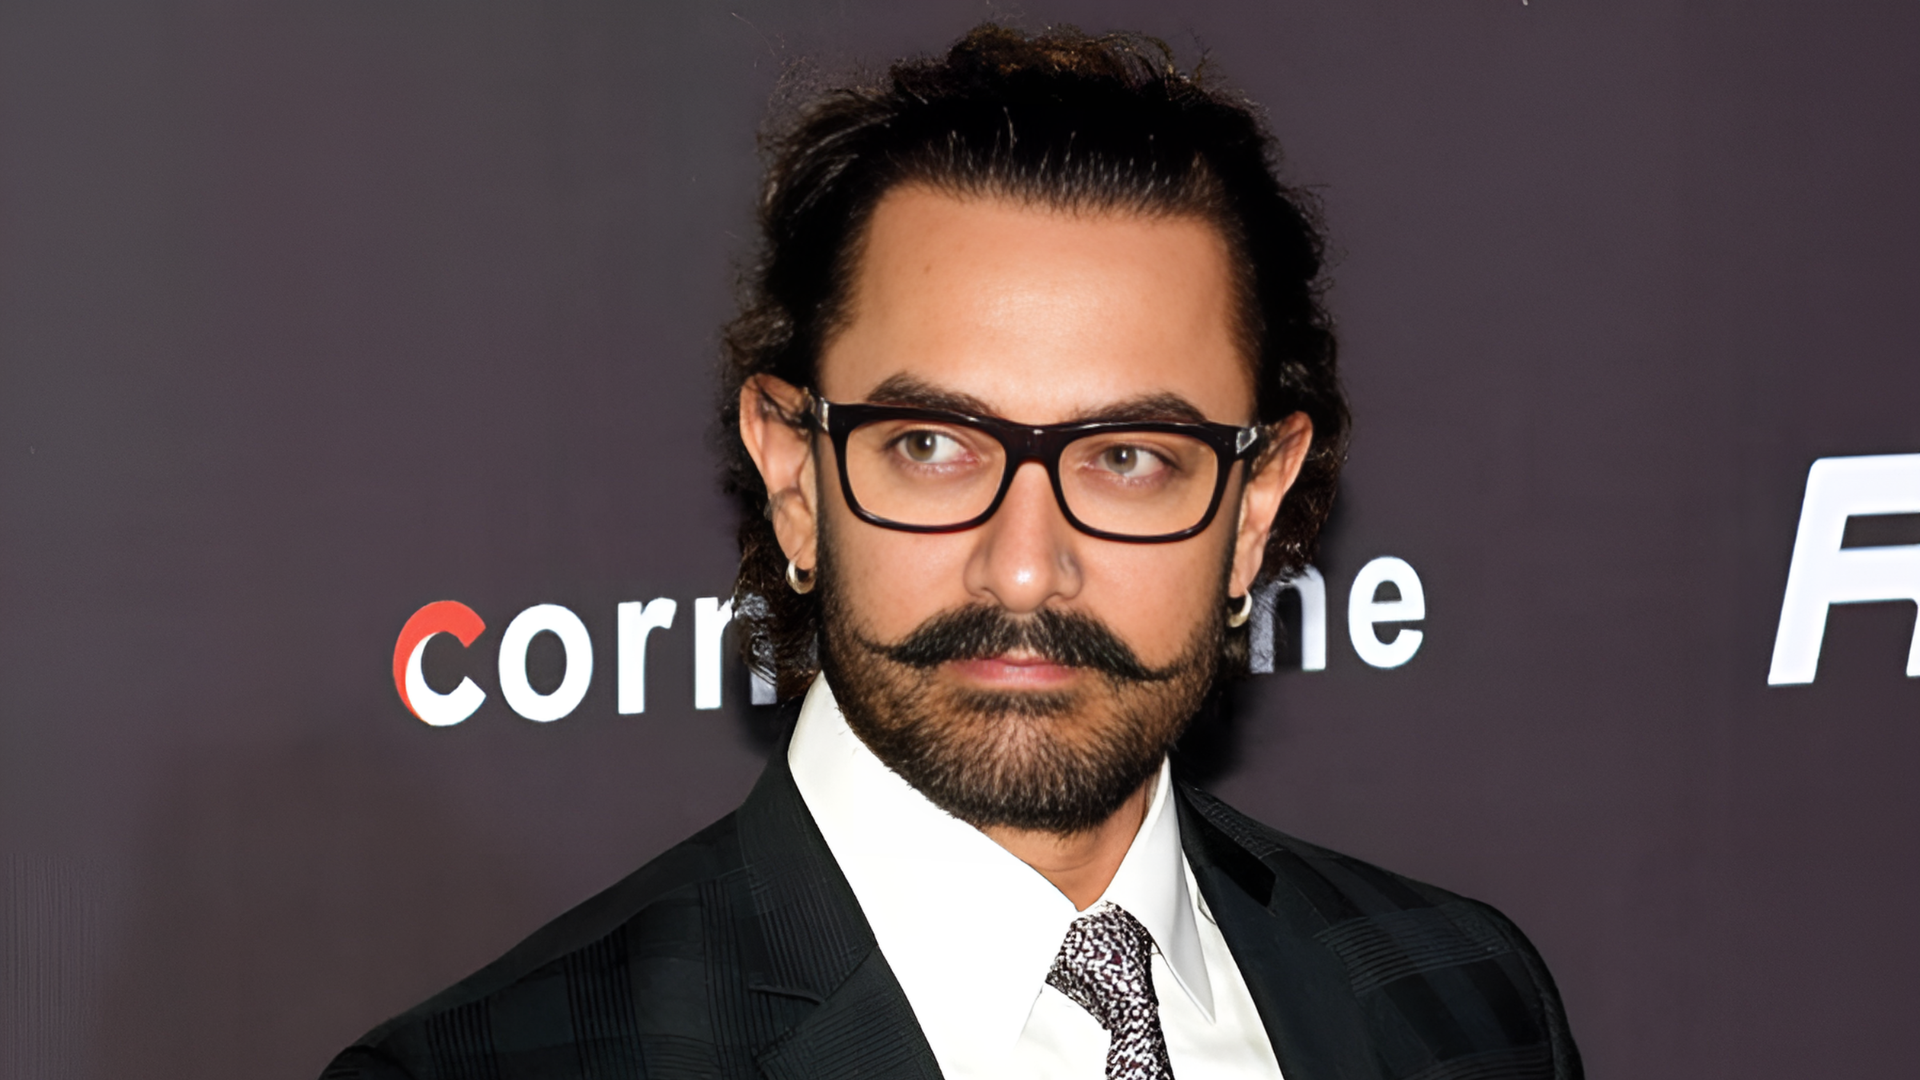 Aamir Khan Deepfake Scandal: Mumbai Police Files FIR Over Alleged Political Video